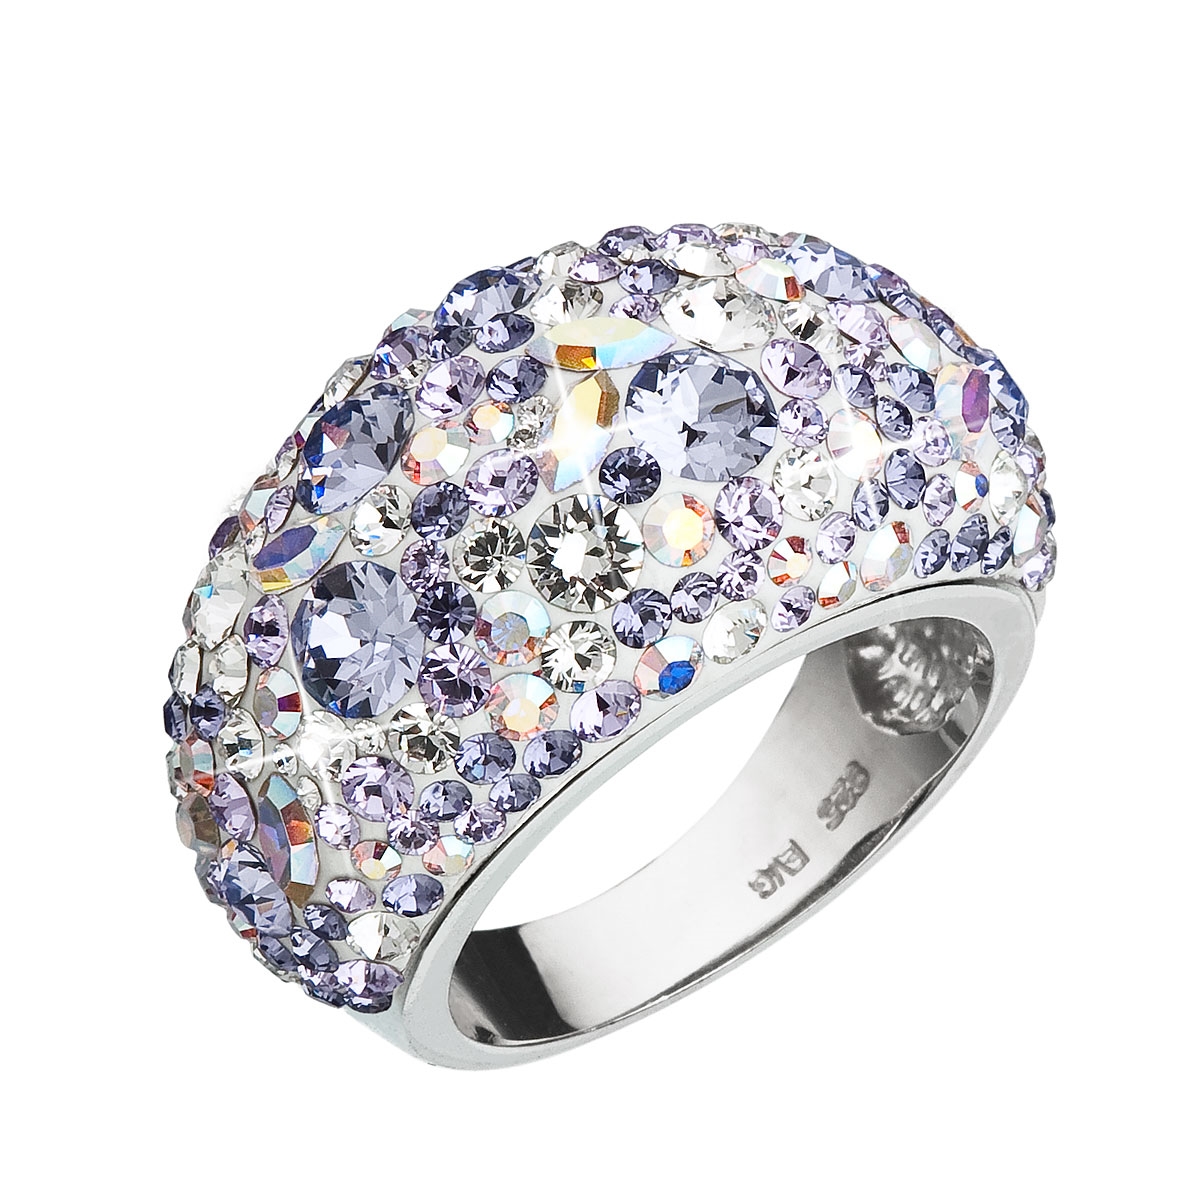 Strieborný prsteň s kryštálmi Crystals from Swarovski ®, Violet